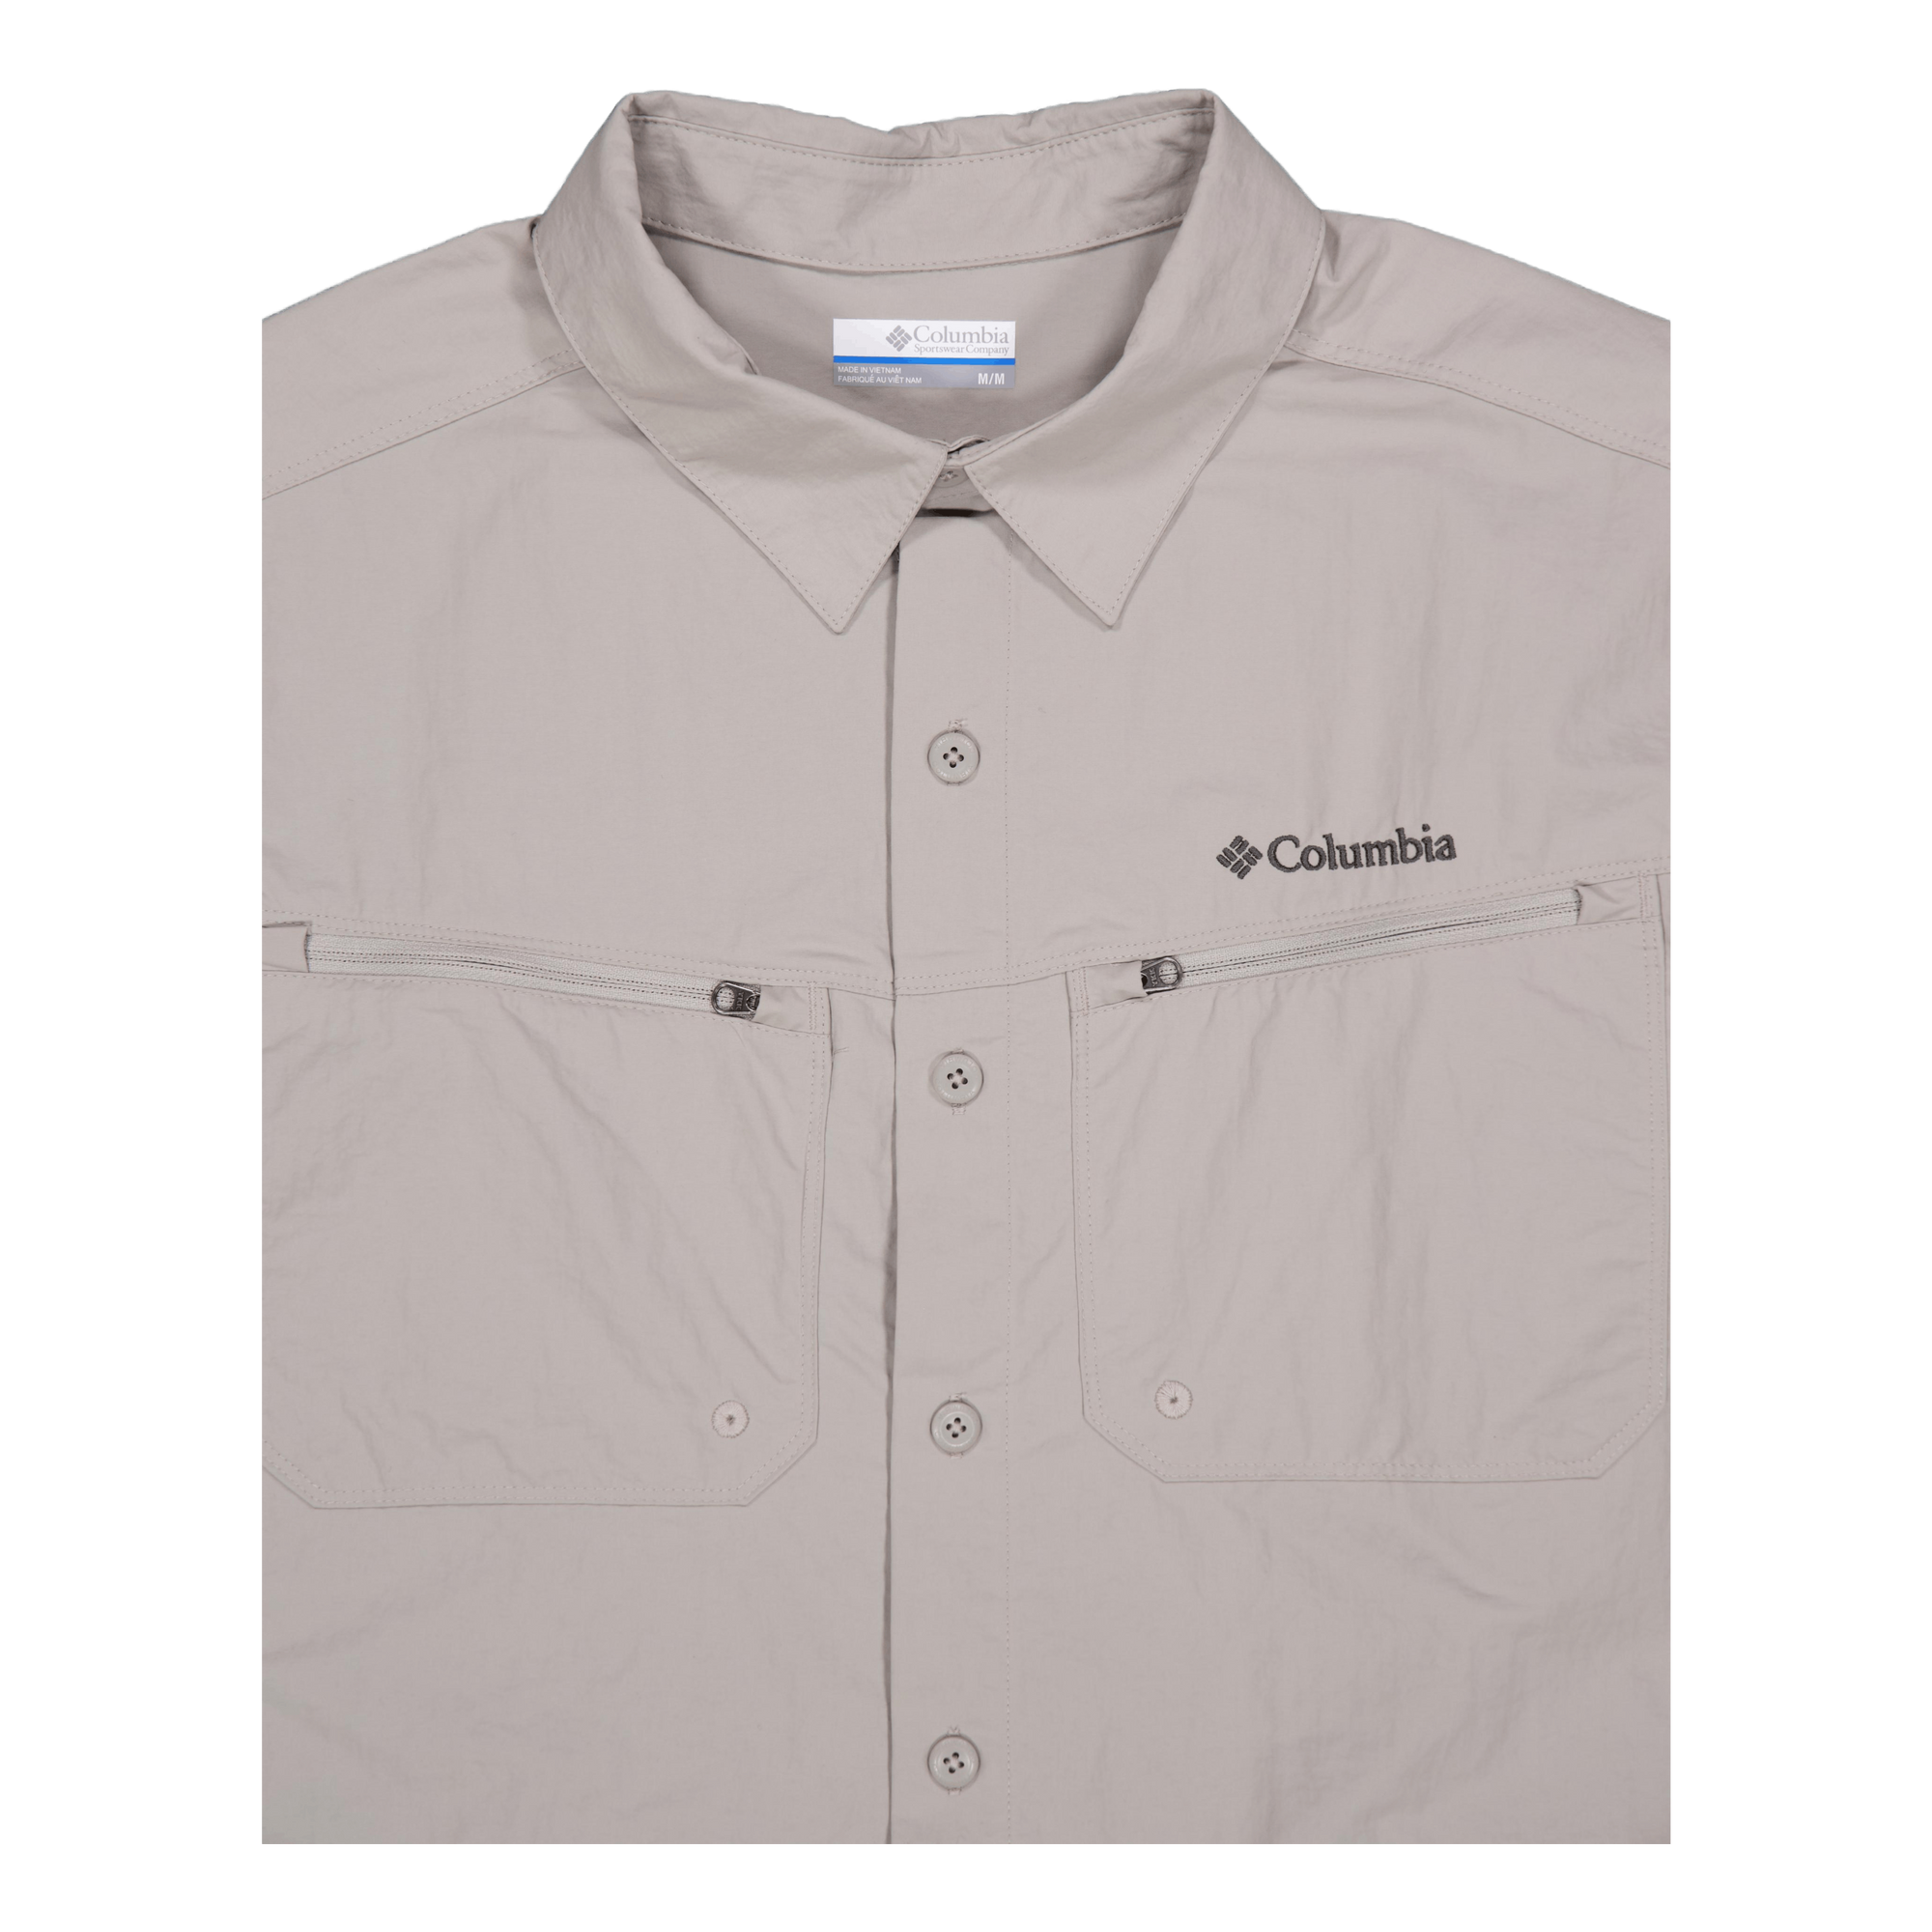 Mountaindale™ Outdoor Ss Shirt Flint Grey